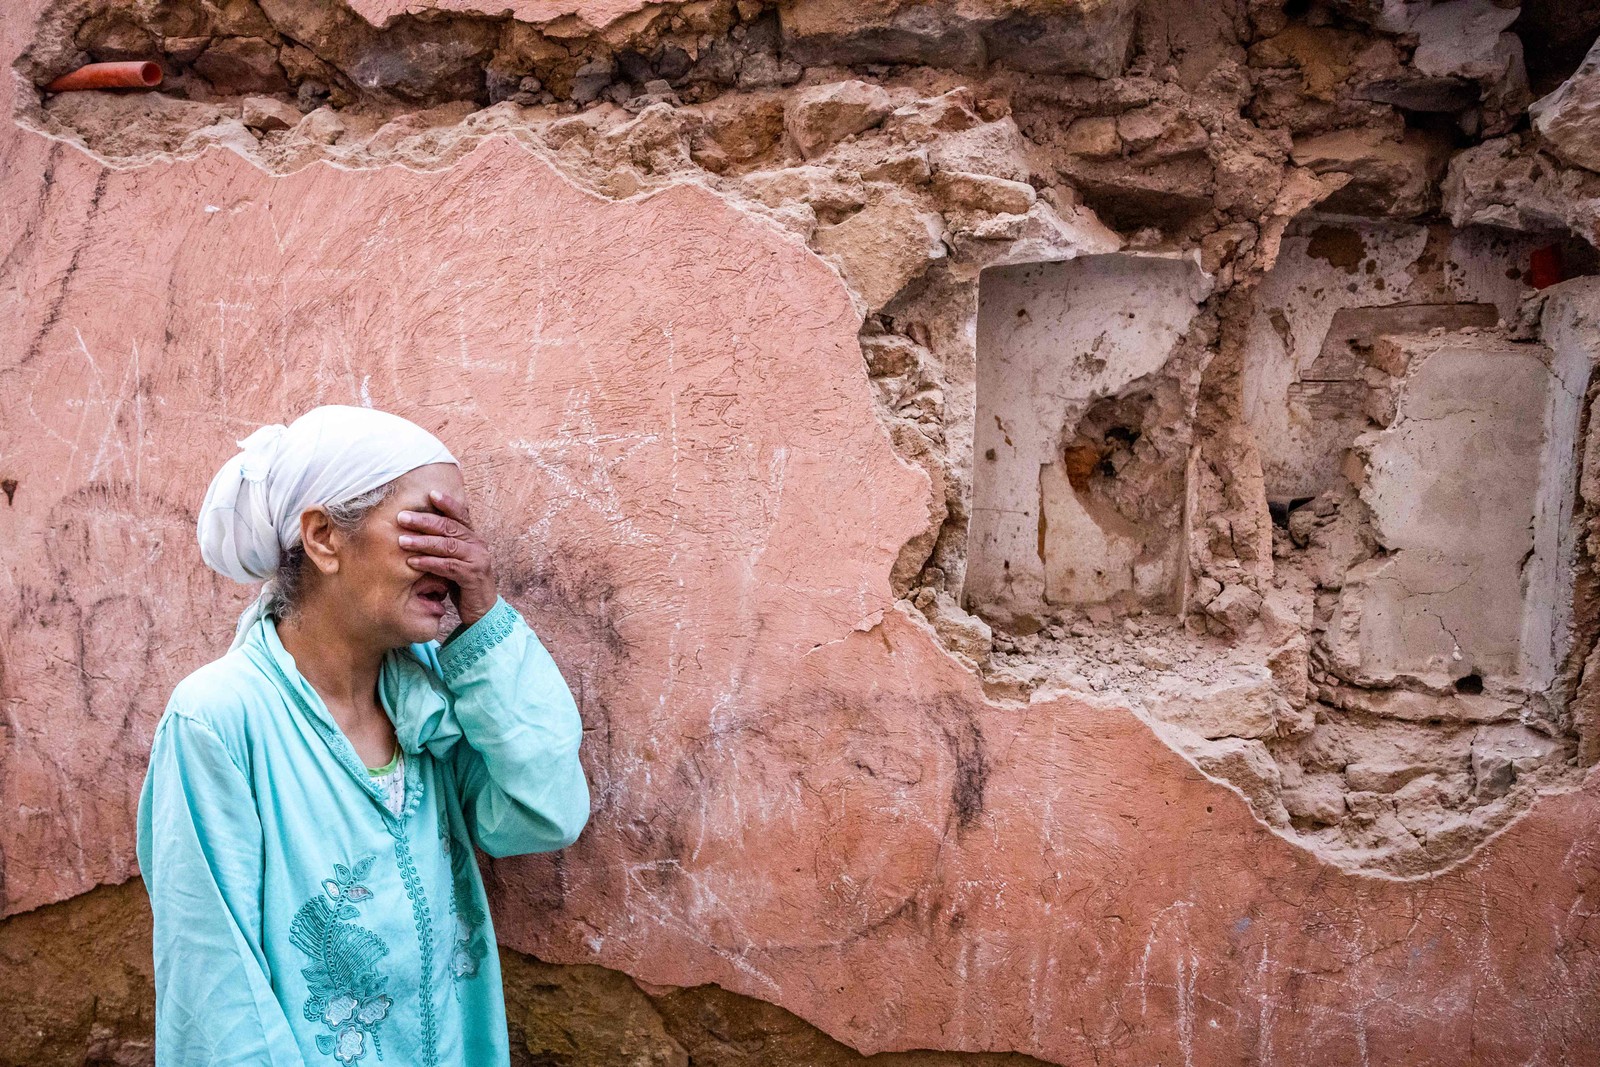 Uma mulher chora ao ver os estragos da sua casa danificada pelo terremoto que atingiu o sudoeste de Marrakech, no Marrocos — Foto: Foto de Fadel Senna / AFP